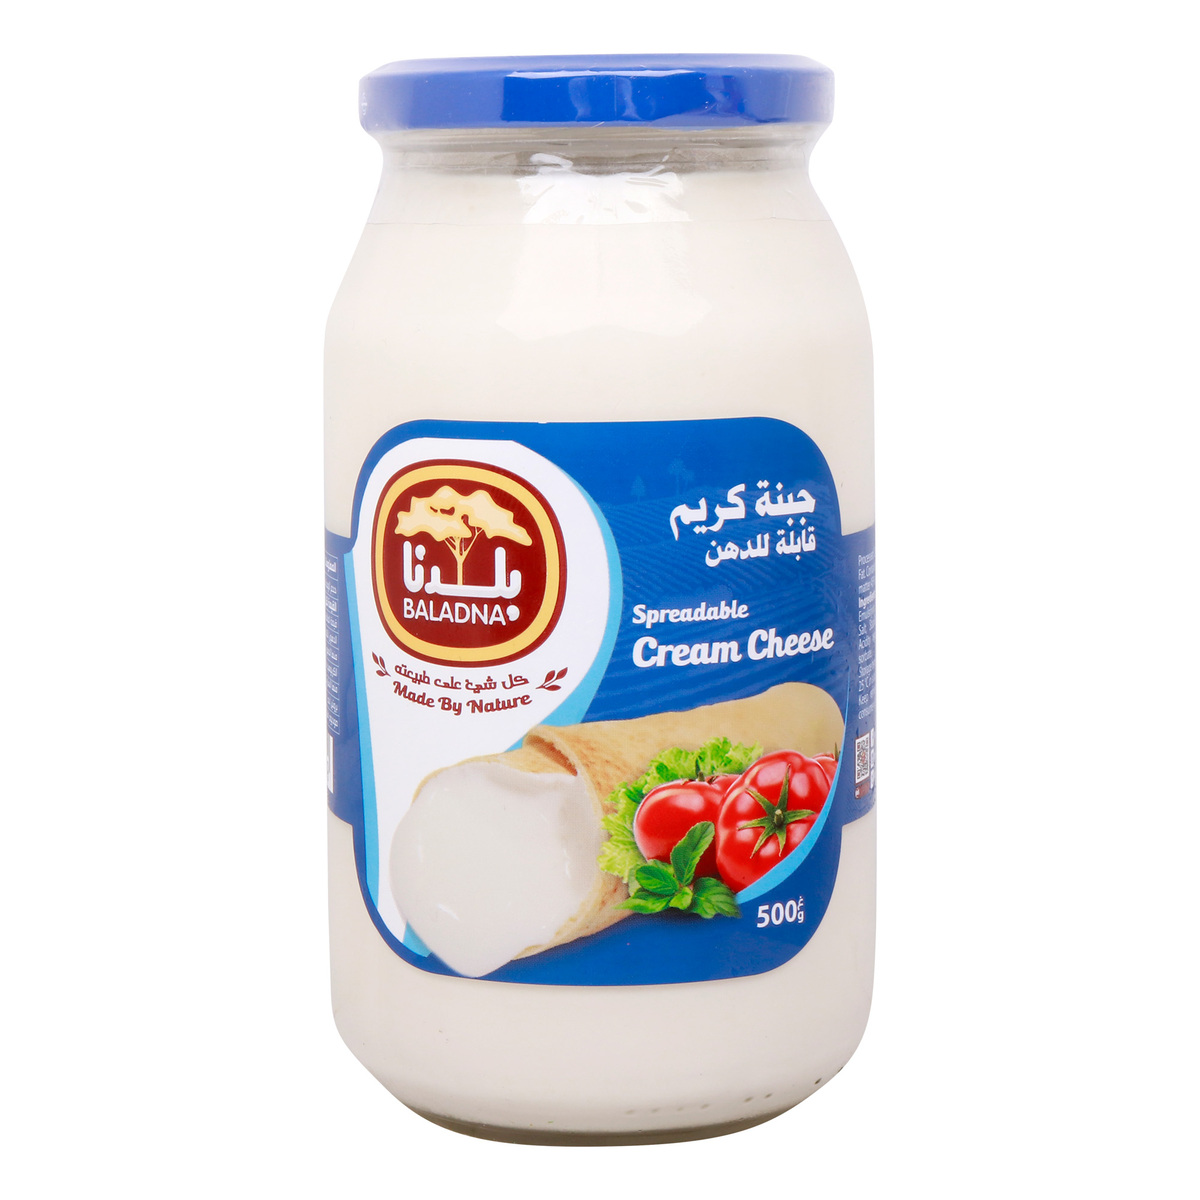 Baladna Spreadable Cream Cheese, 500 g